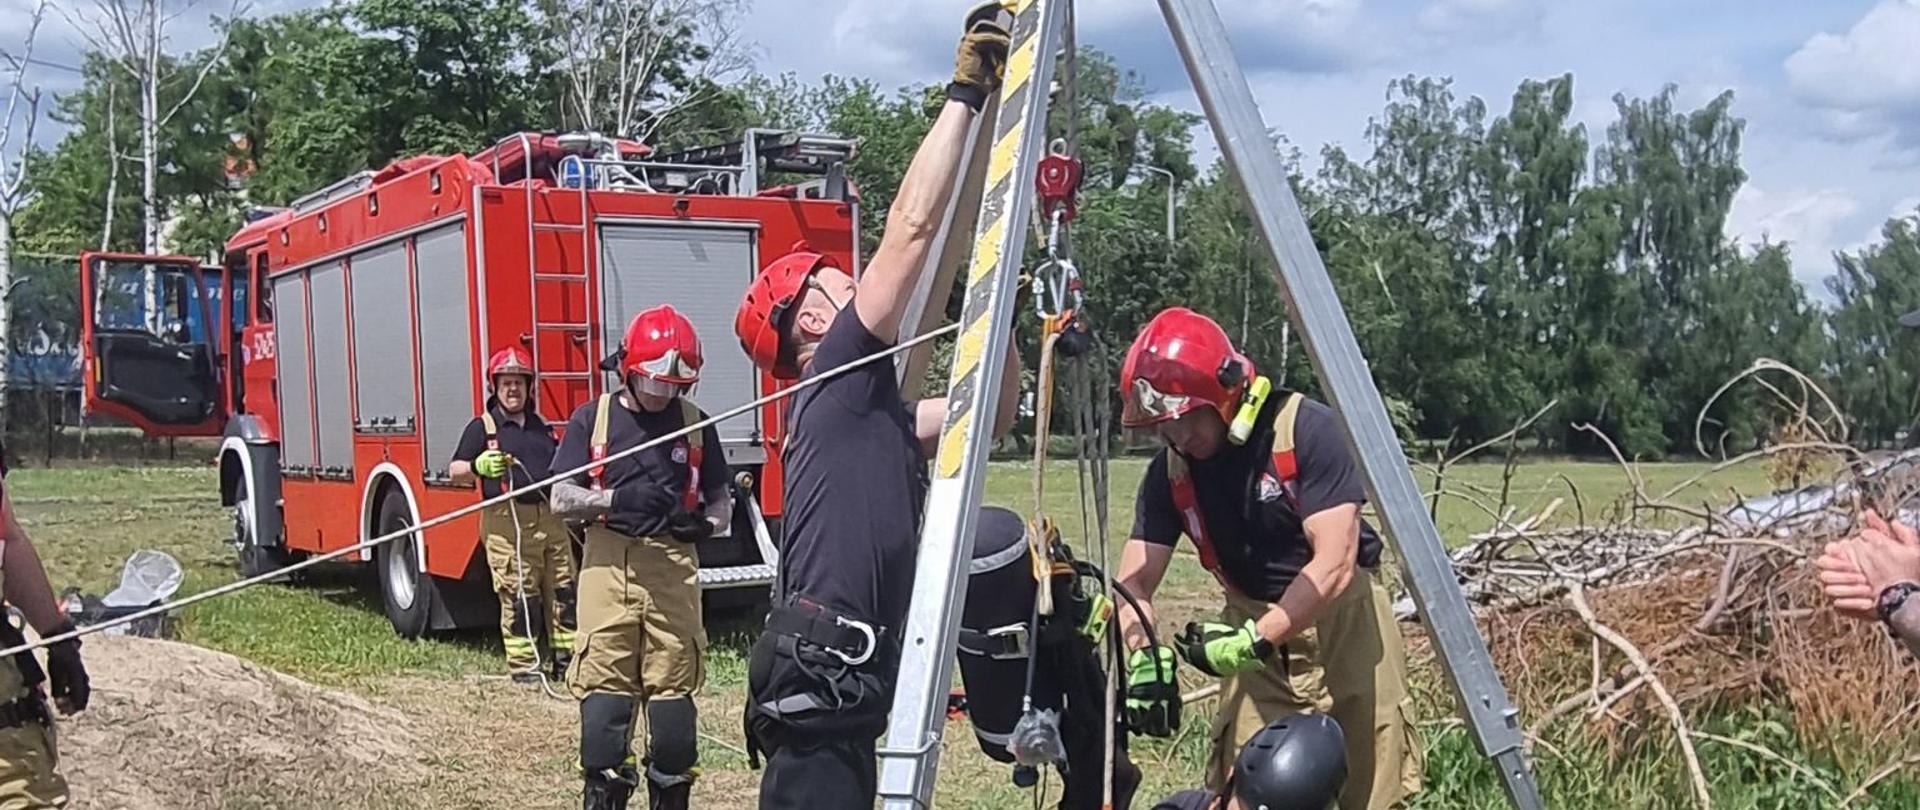 W czerwcu br. zmiany służbowe Jednostki Ratowniczo – Gaśniczej Państwowej Straży Pożarnej w Obornikach przeprowadziły cykl szkoleń w ramach doskonalenia zawodowego, w szczególności z zakresu ratownictwa wysokościowego, technicznego oraz z zakresu gaszenia pożarów wewnętrznych.